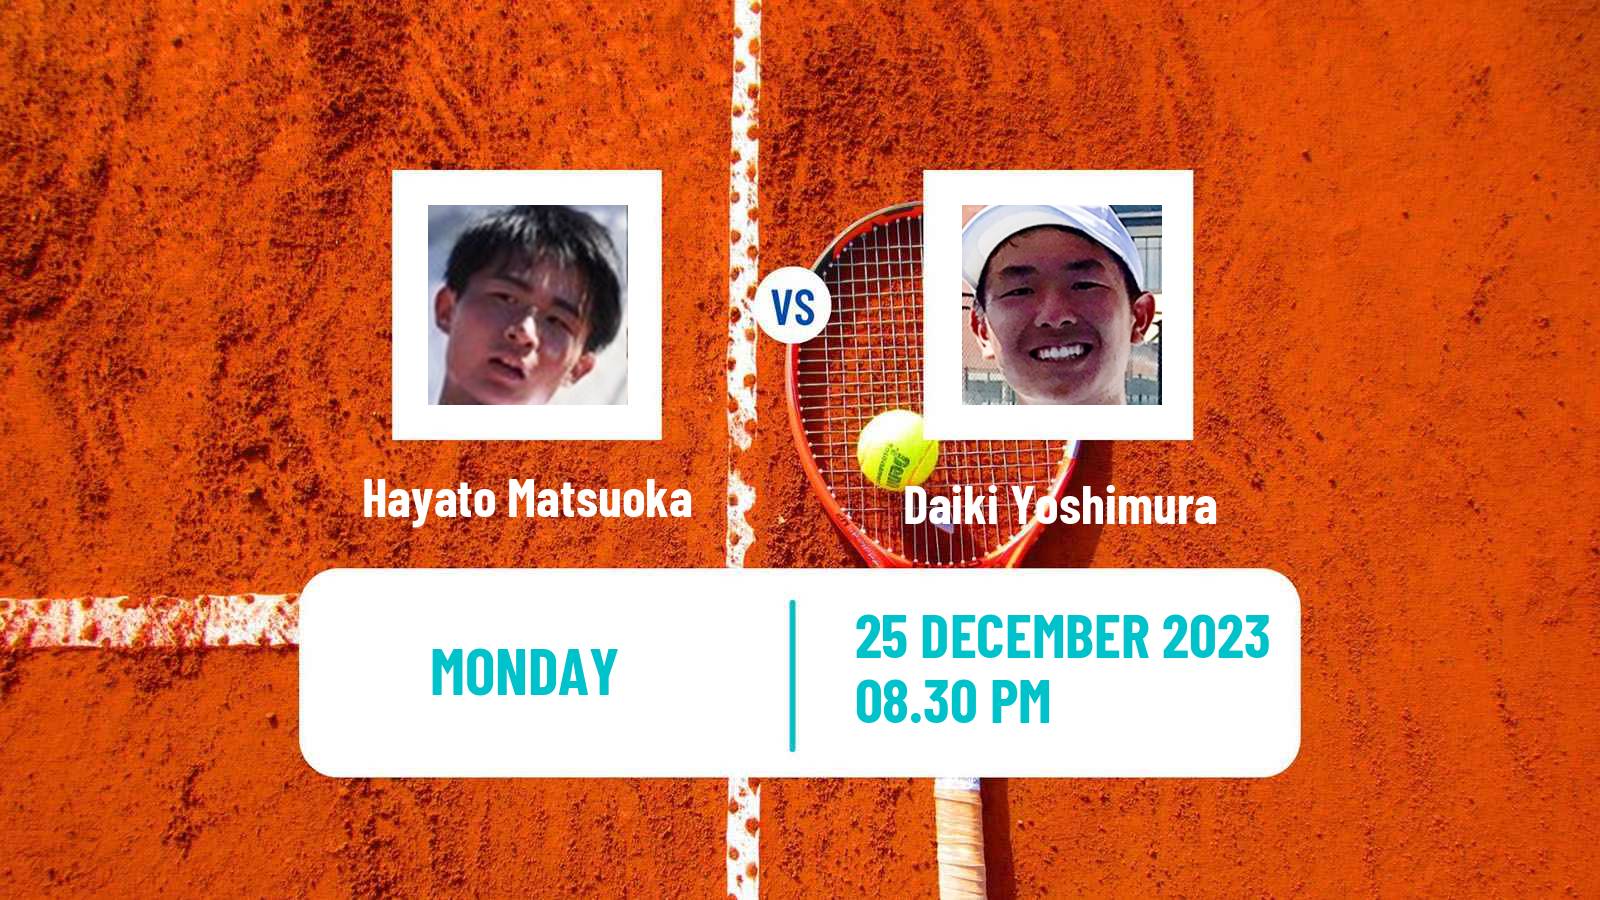 Tennis ITF M15 Yanagawa 2 Men Hayato Matsuoka - Daiki Yoshimura